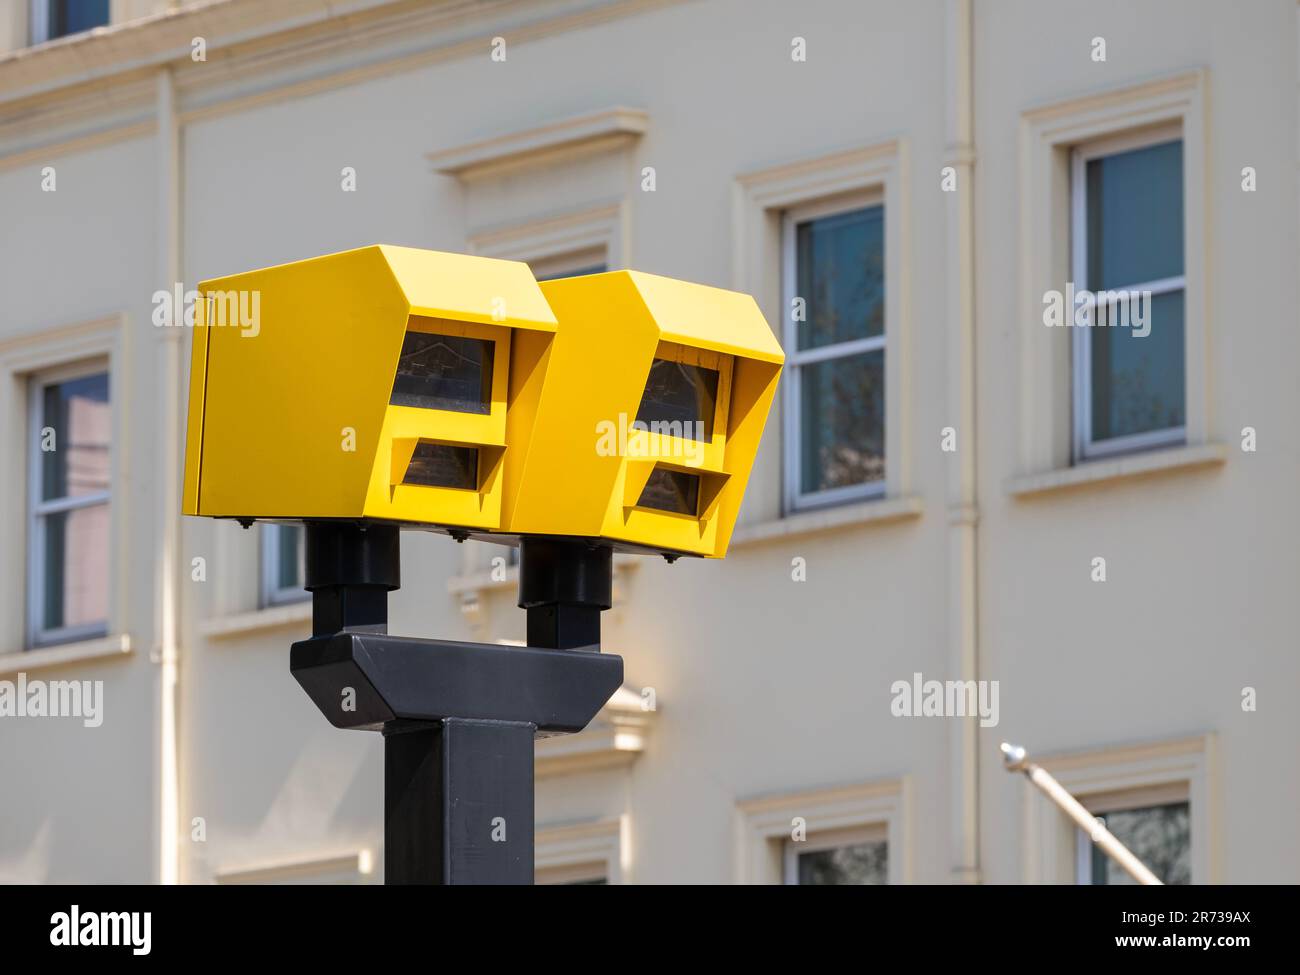 Niederwinkelansicht von zwei hellen gelben Radarkameras vor einem urbanen Hintergrund. Stockfoto